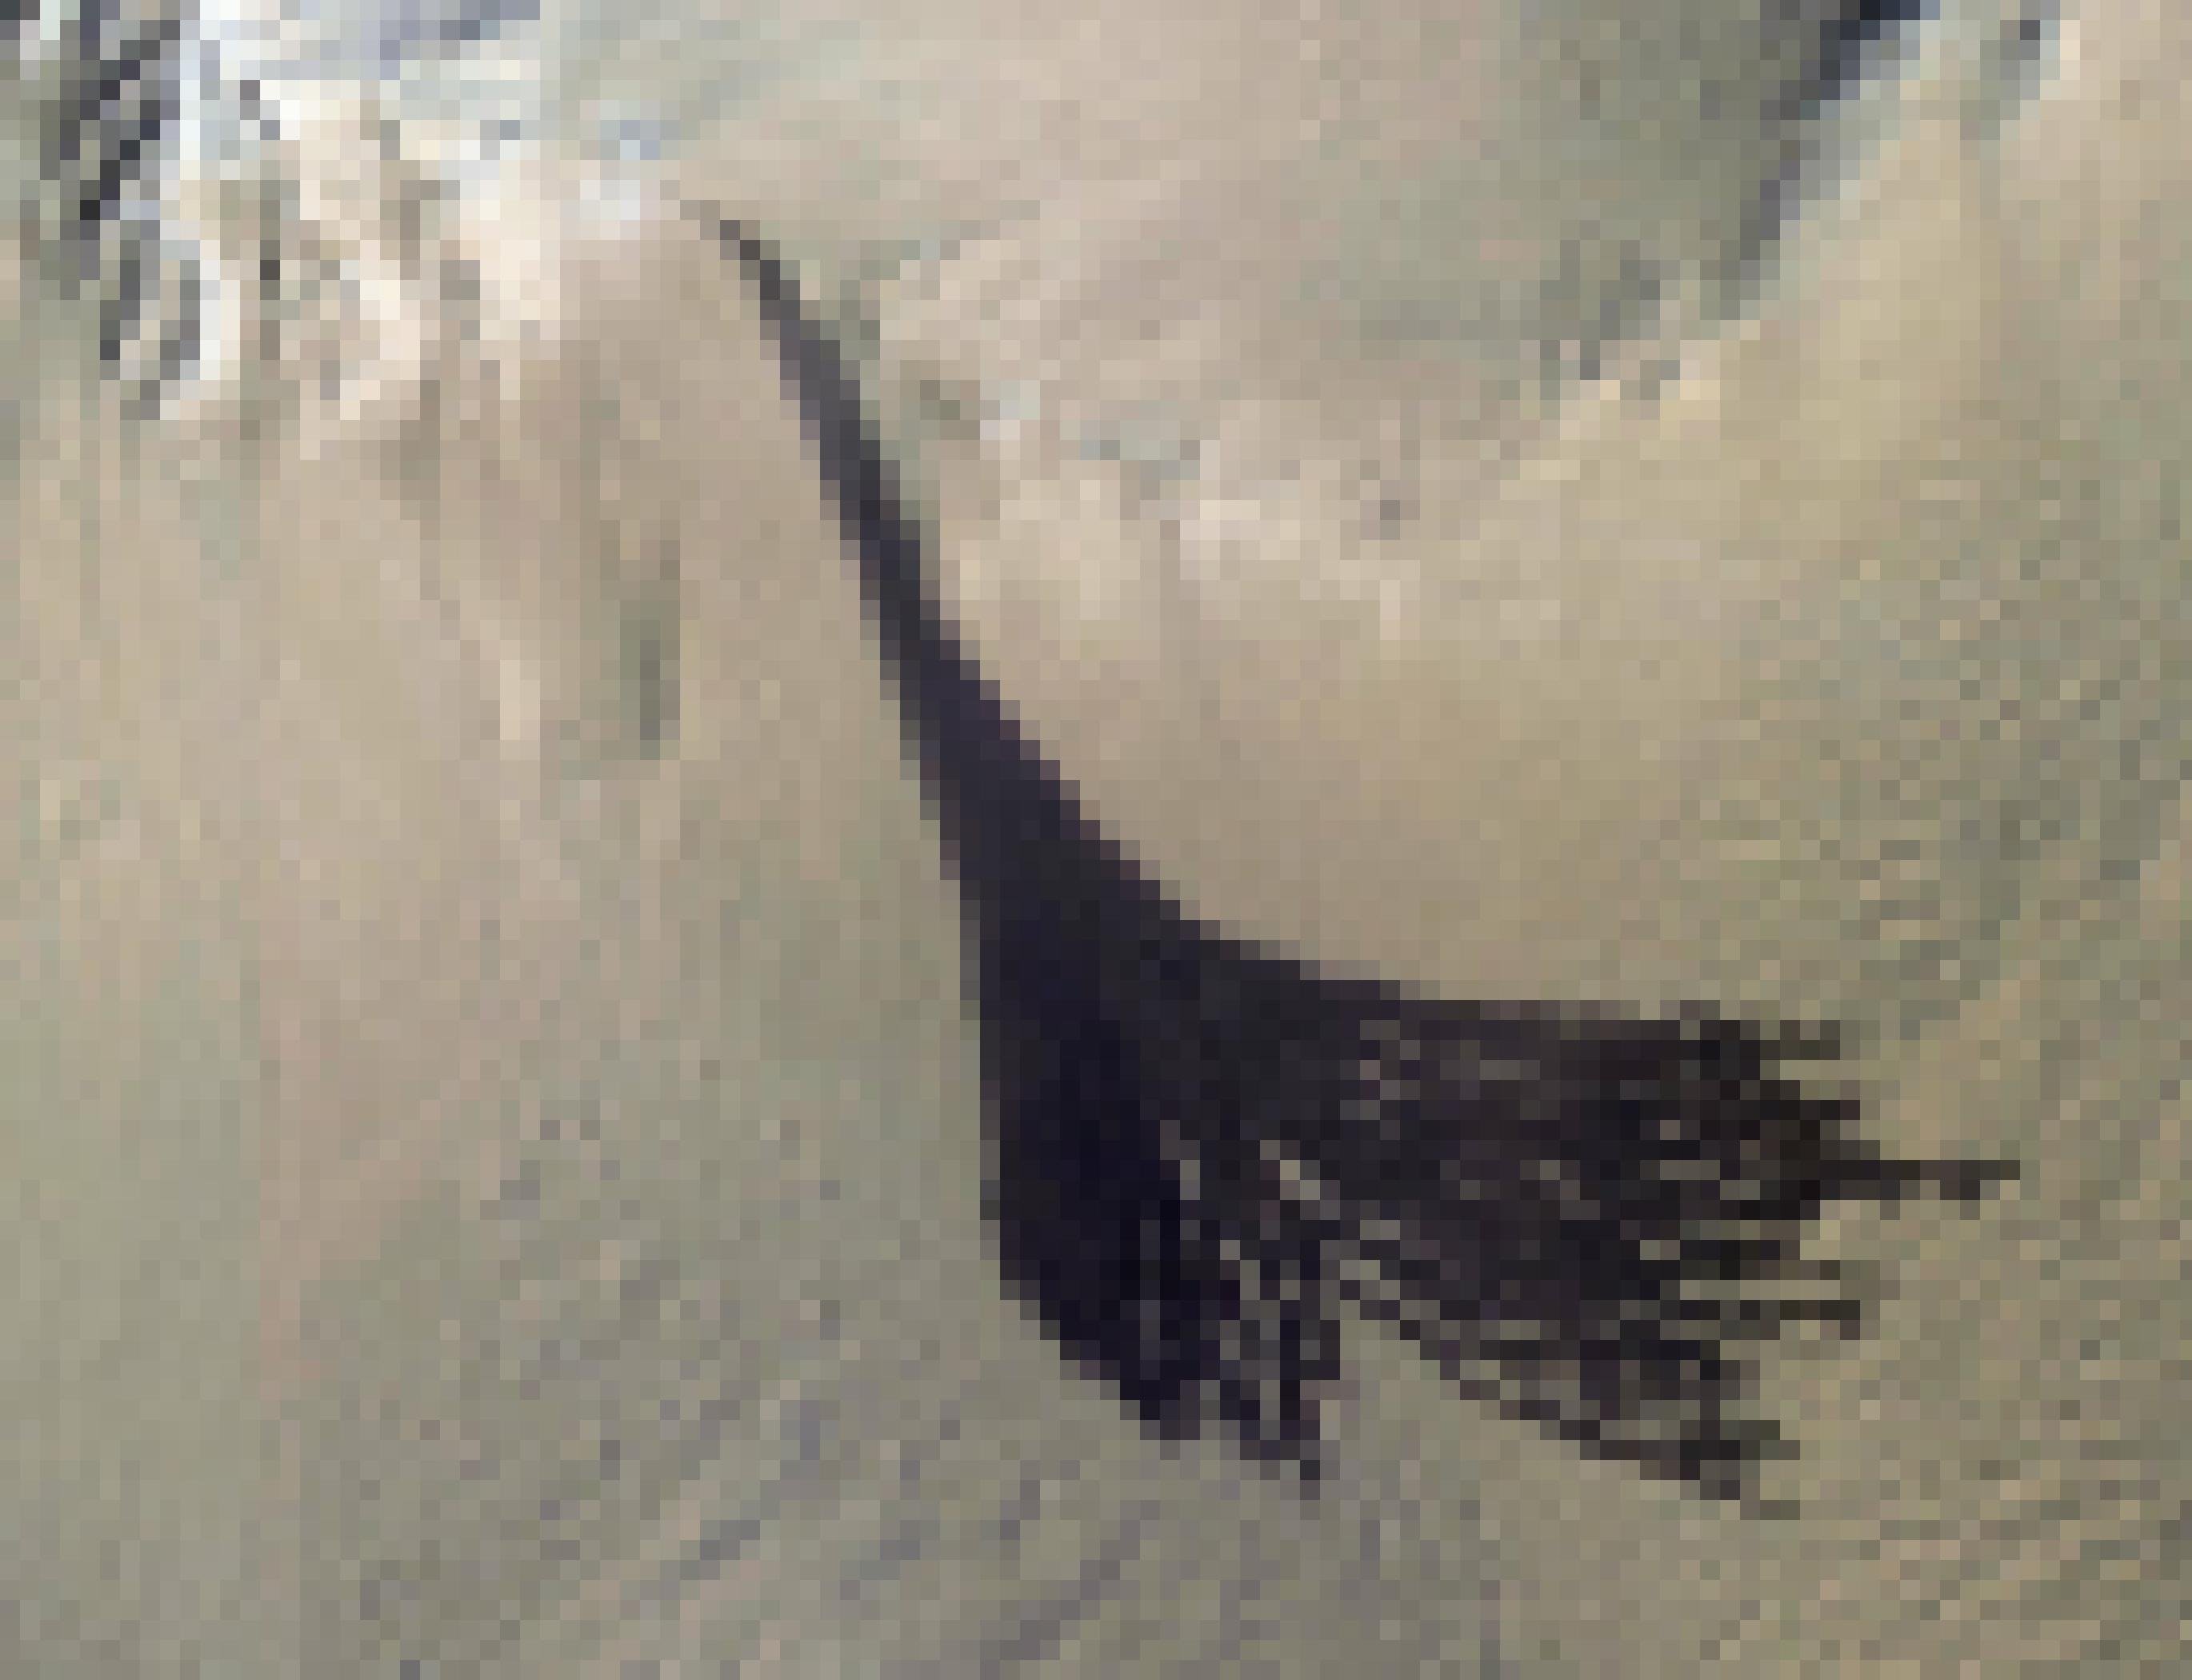 Satellitenbild auf einen Hang aus hellem Gestein, den mehrere breite, pechschwarze Linien hinabführen, die an einem Punkt zu beginnen scheinen.